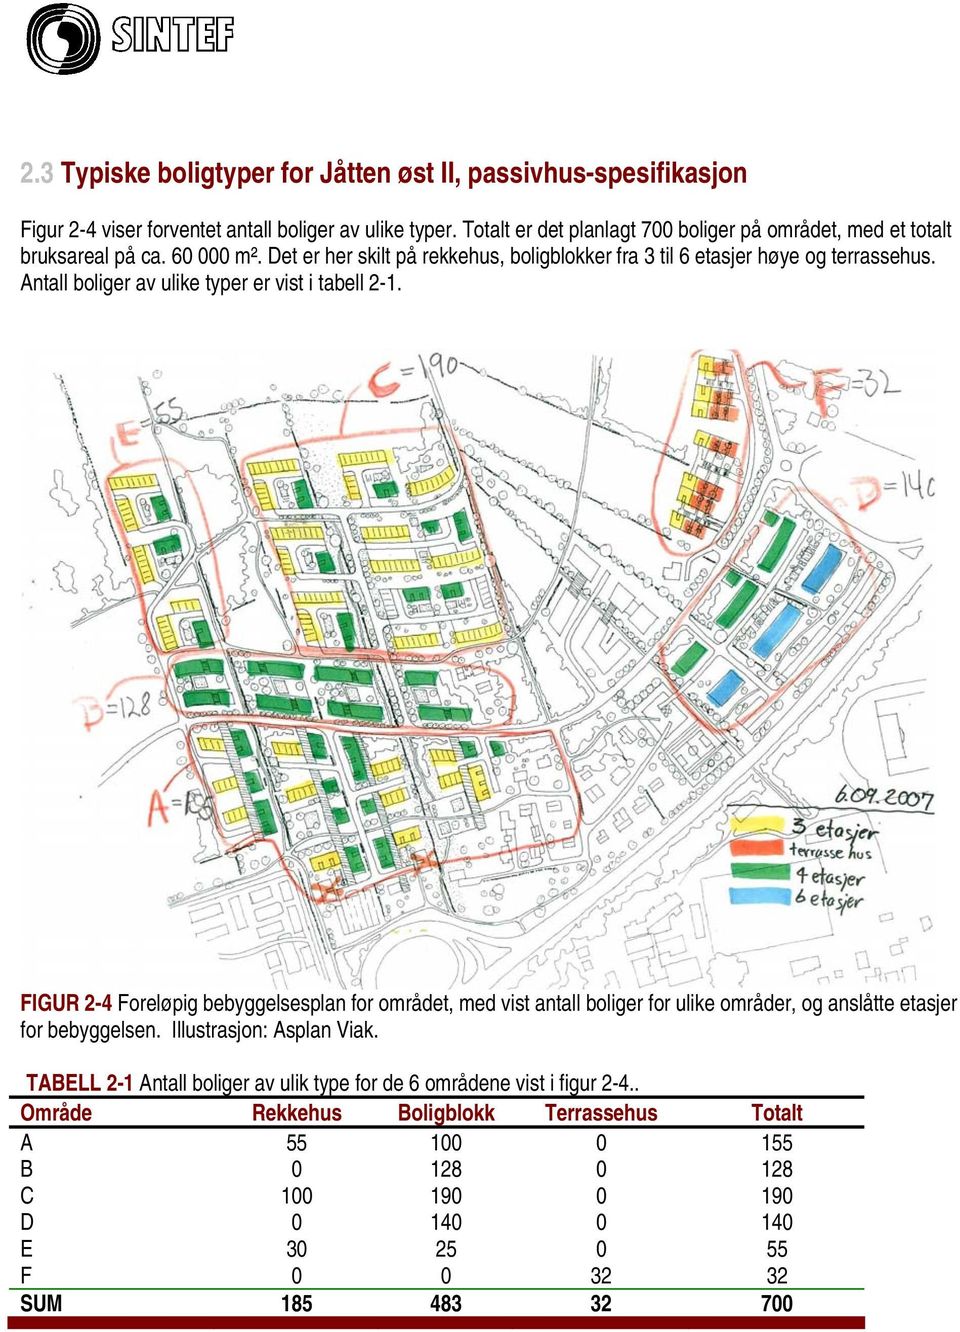 Antall boliger av ulike typer er vist i tabell 2-1. FIGUR 2-4 Foreløpig bebyggelsesplan for området, med vist antall boliger for ulike områder, og anslåtte etasjer for bebyggelsen.